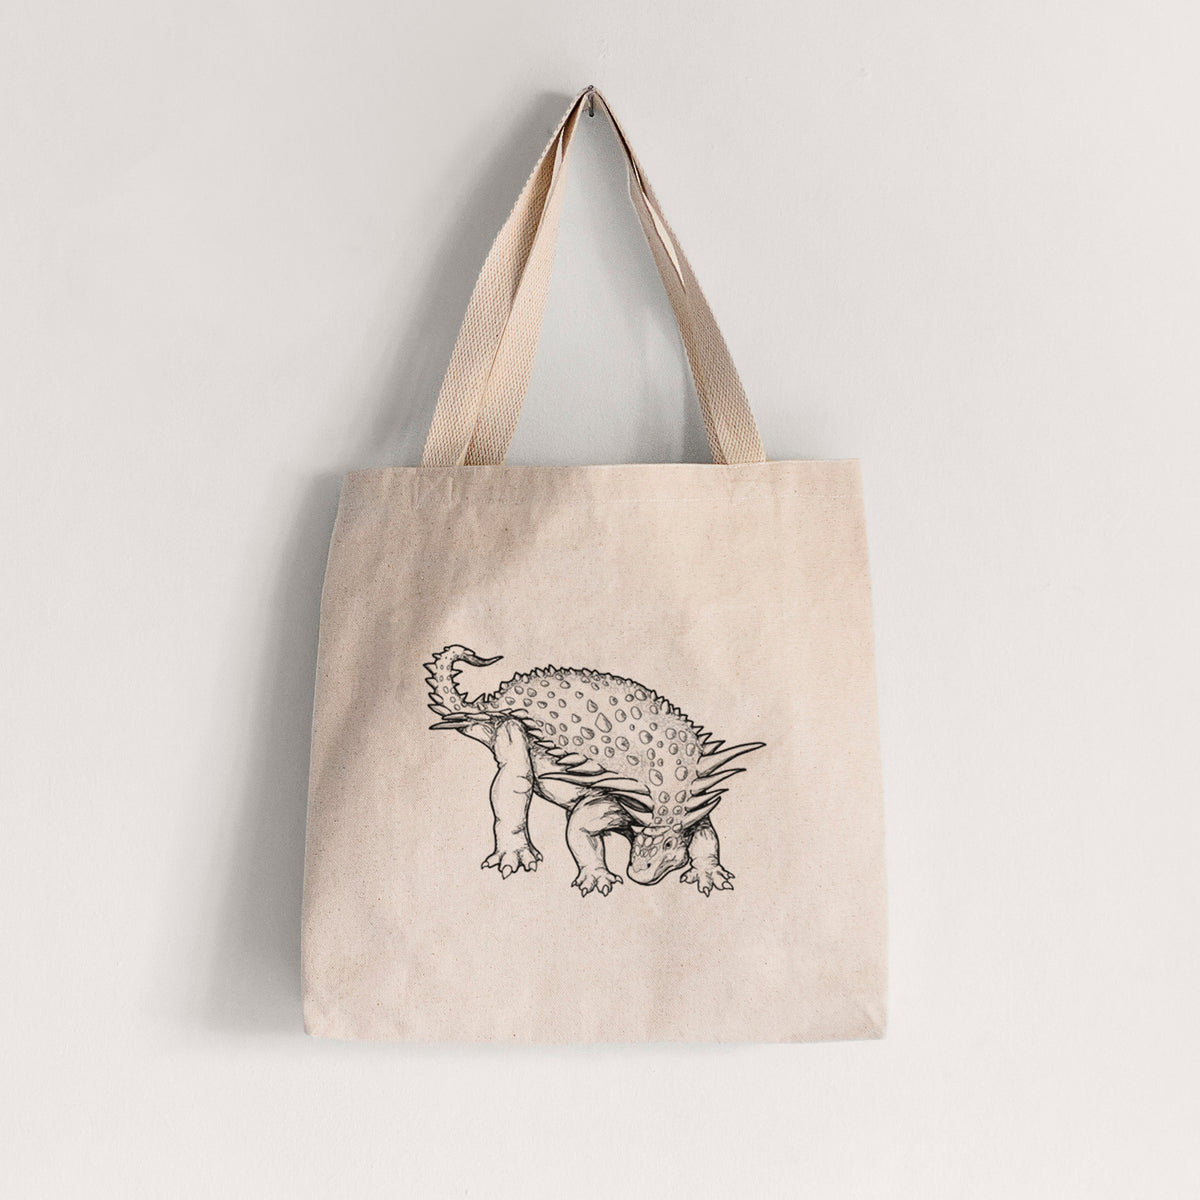 Nodosaurus Textilis - Tote Bag